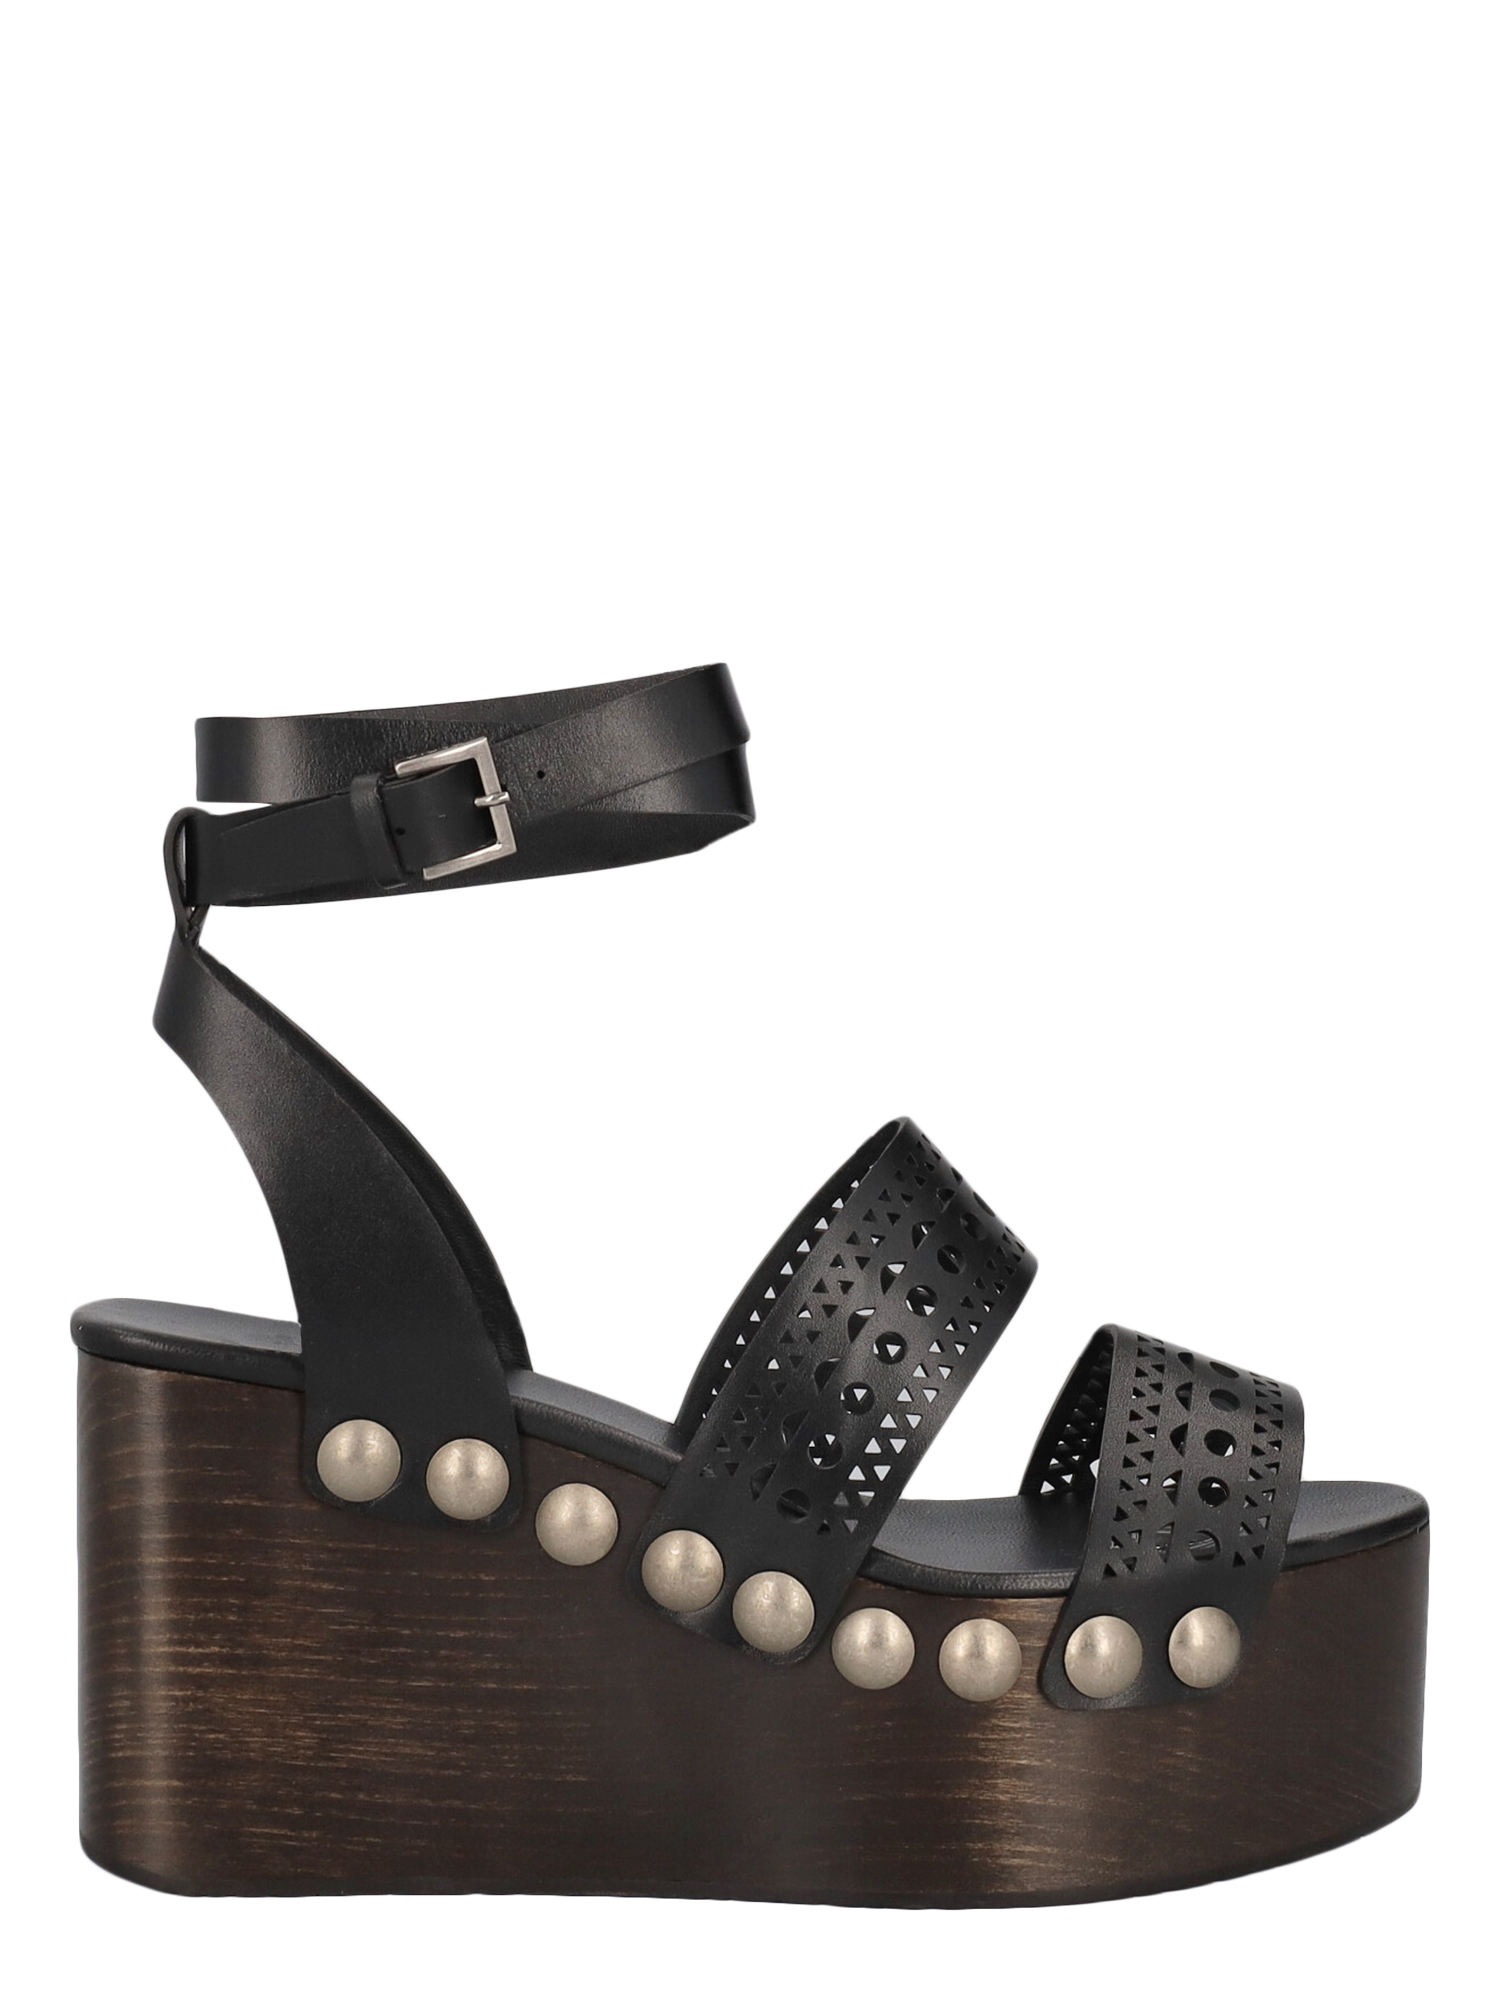 Sandales Pour Femme - Alaia - En Leather Black - Taille: IT 37 - EU 37